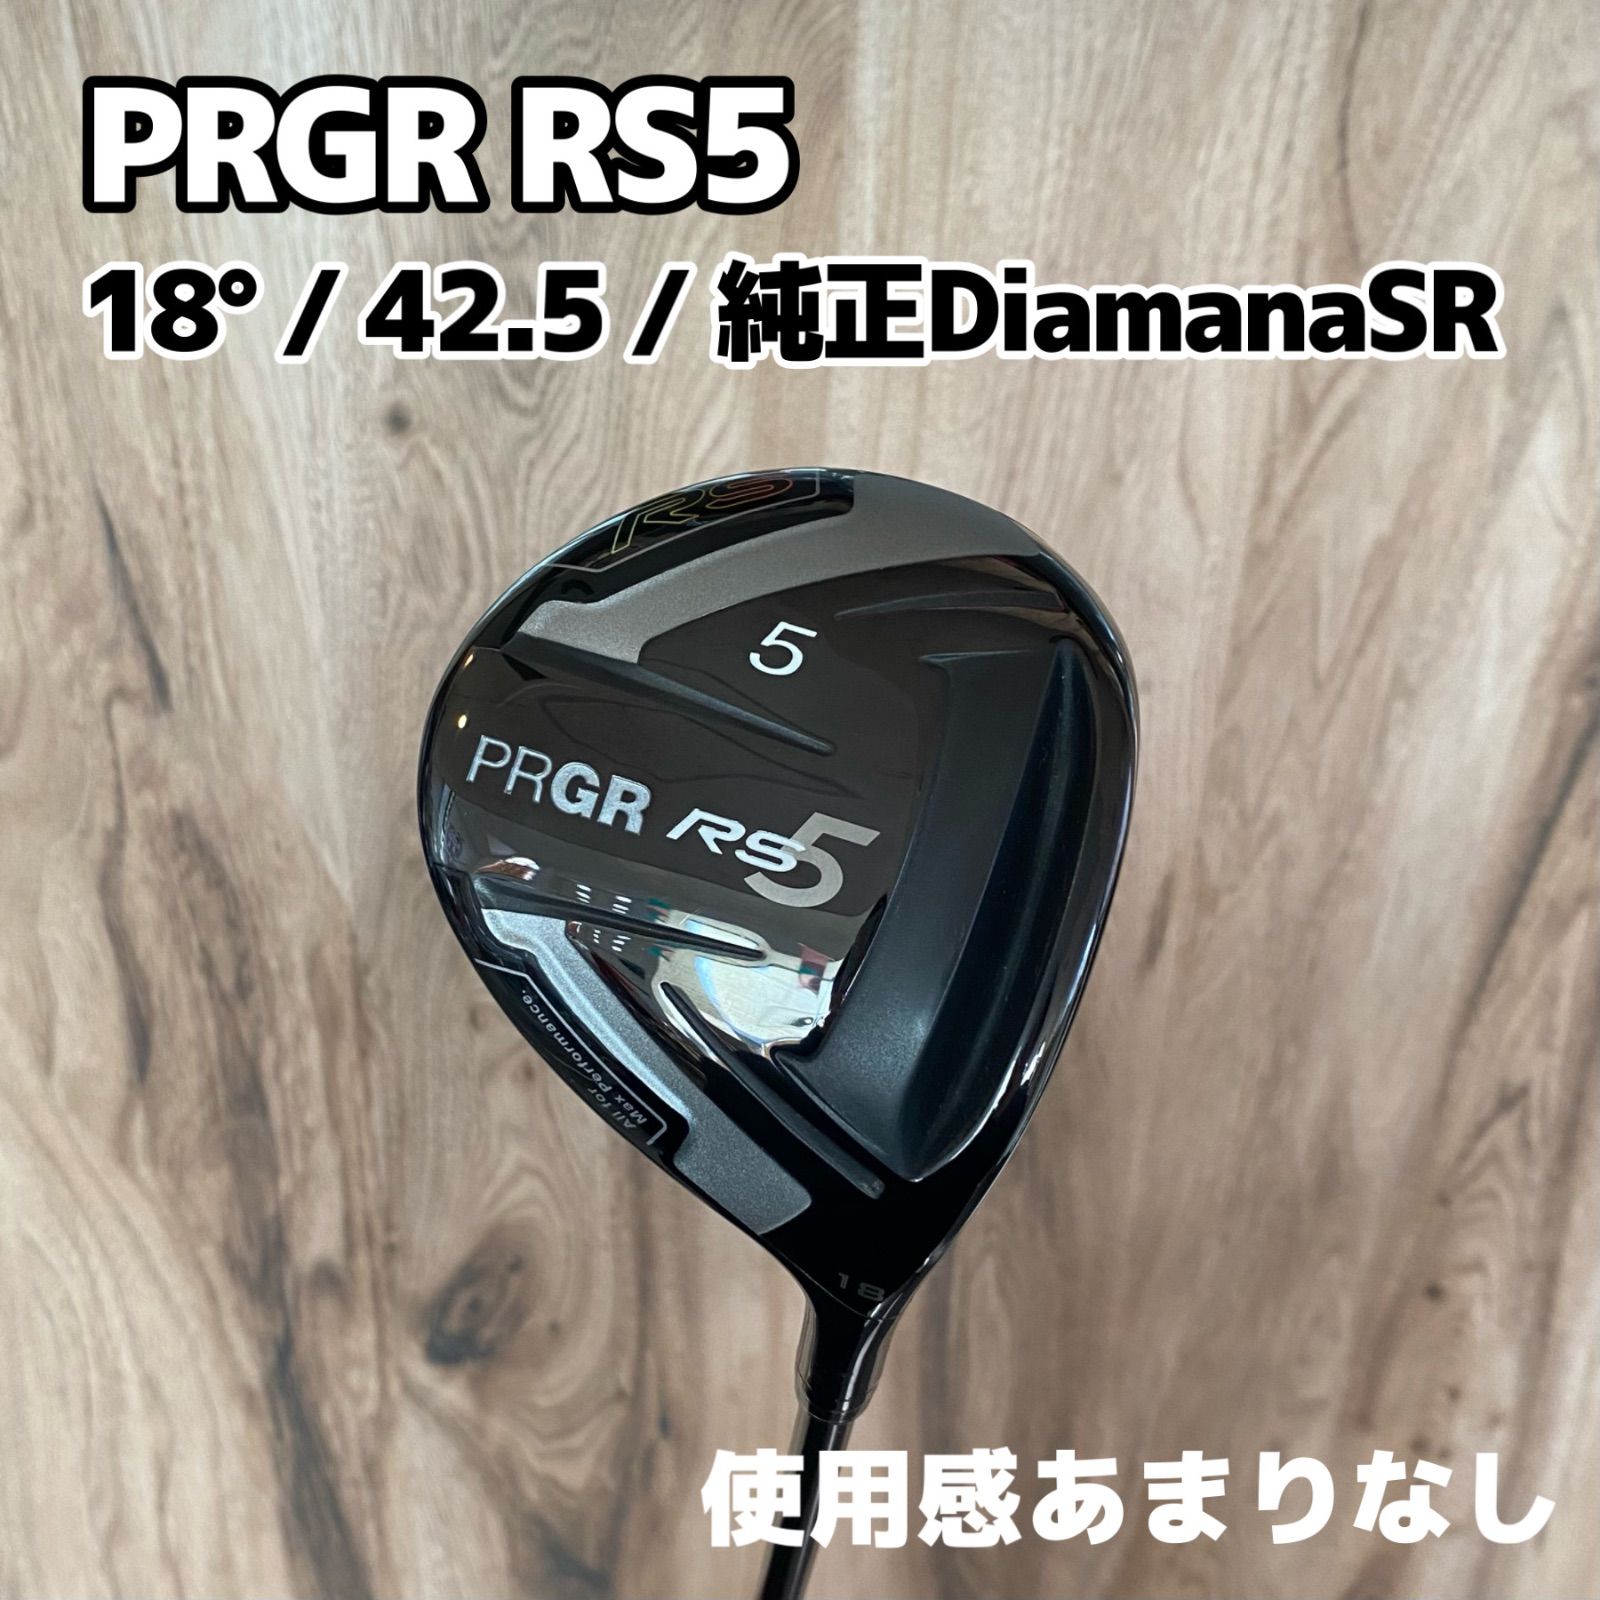 PRGR RS5 フェアウェイウッド - えふ 10/18-19 休み - メルカリ